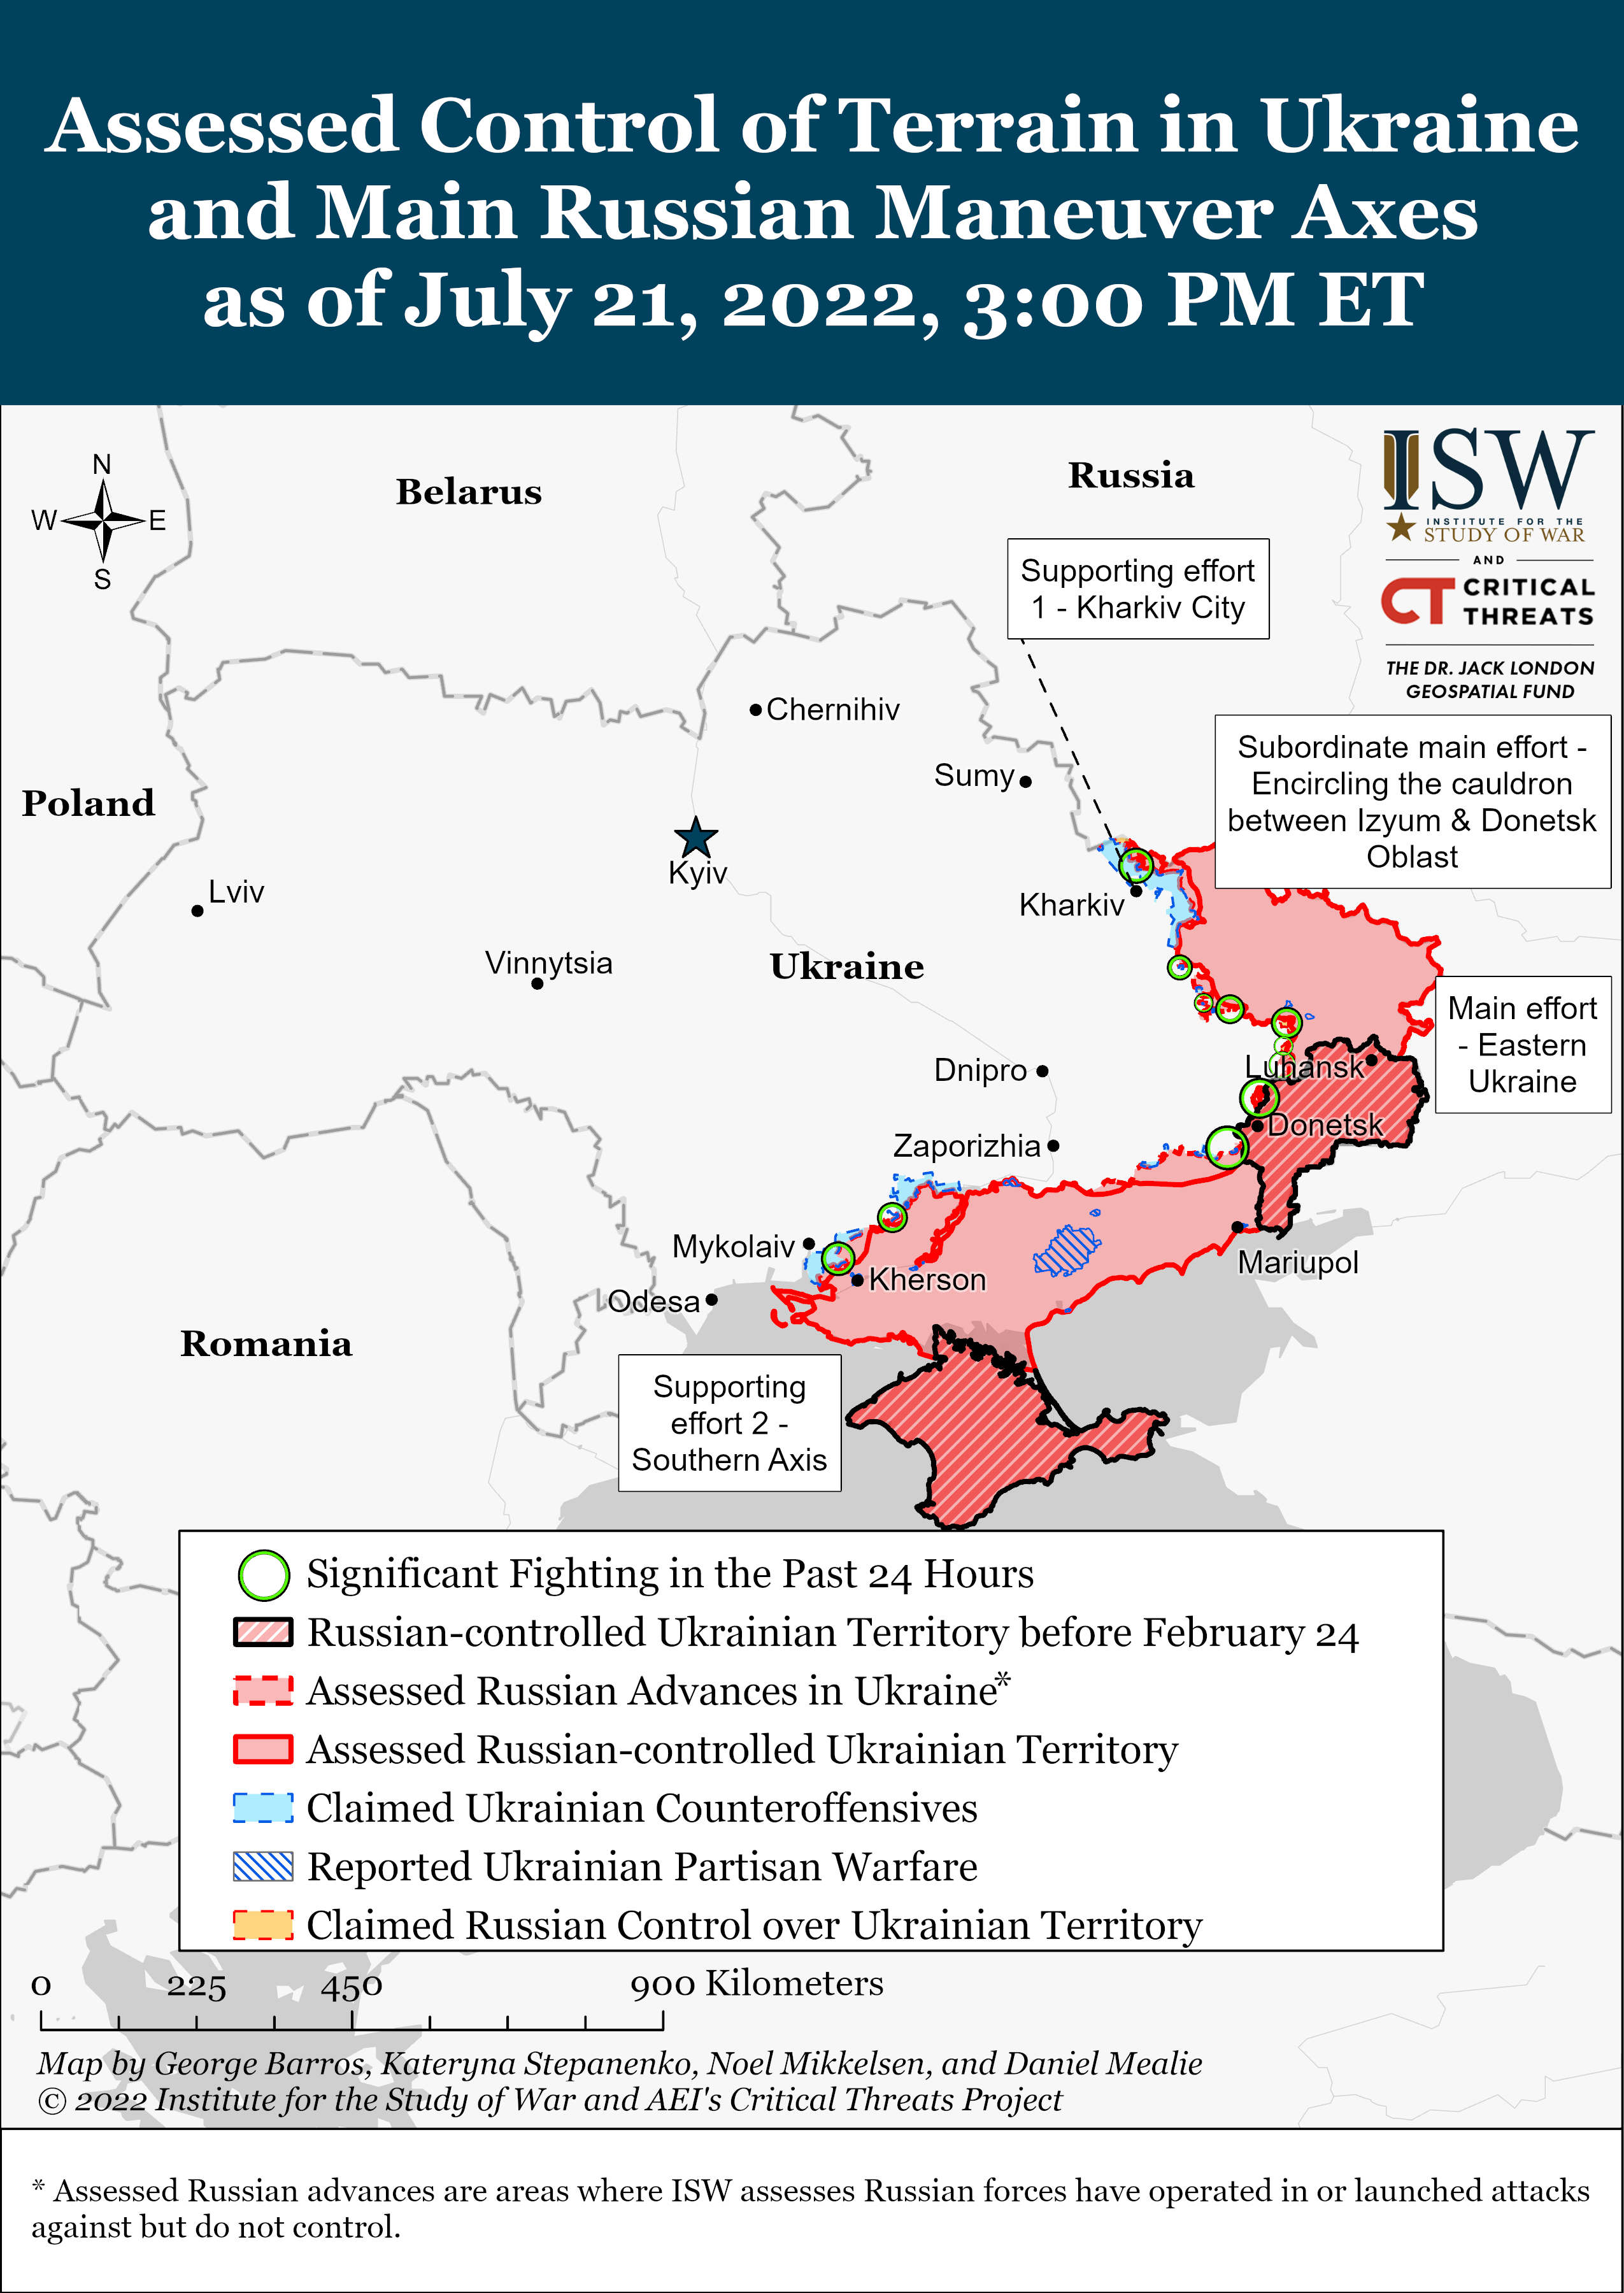 Wie ist der aktuelle Stand (21.07.22) der russischen Truppen in der Ukraine?